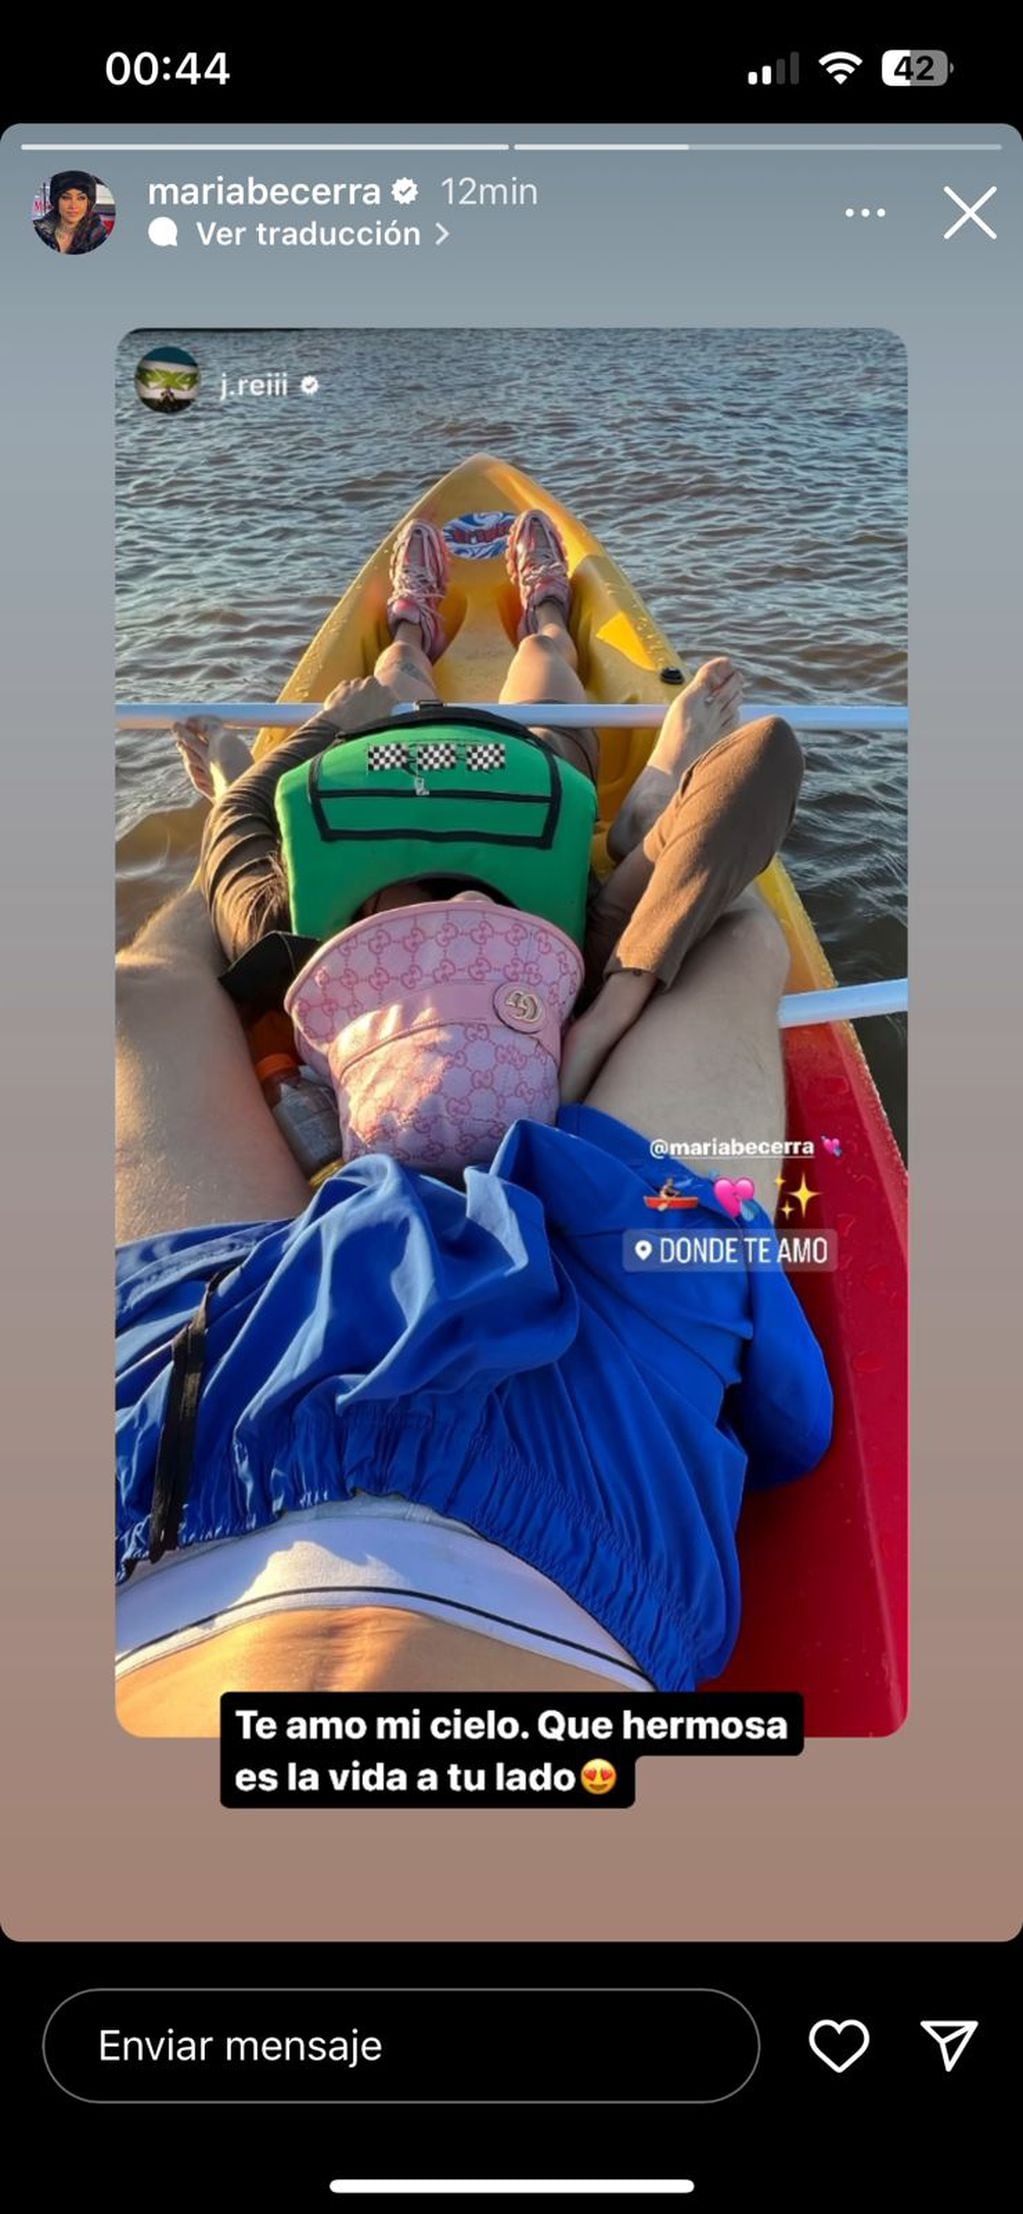 María Becerra posó en un kayak con su novio, J Rei y lució un sombrero Gucci muy costoso.